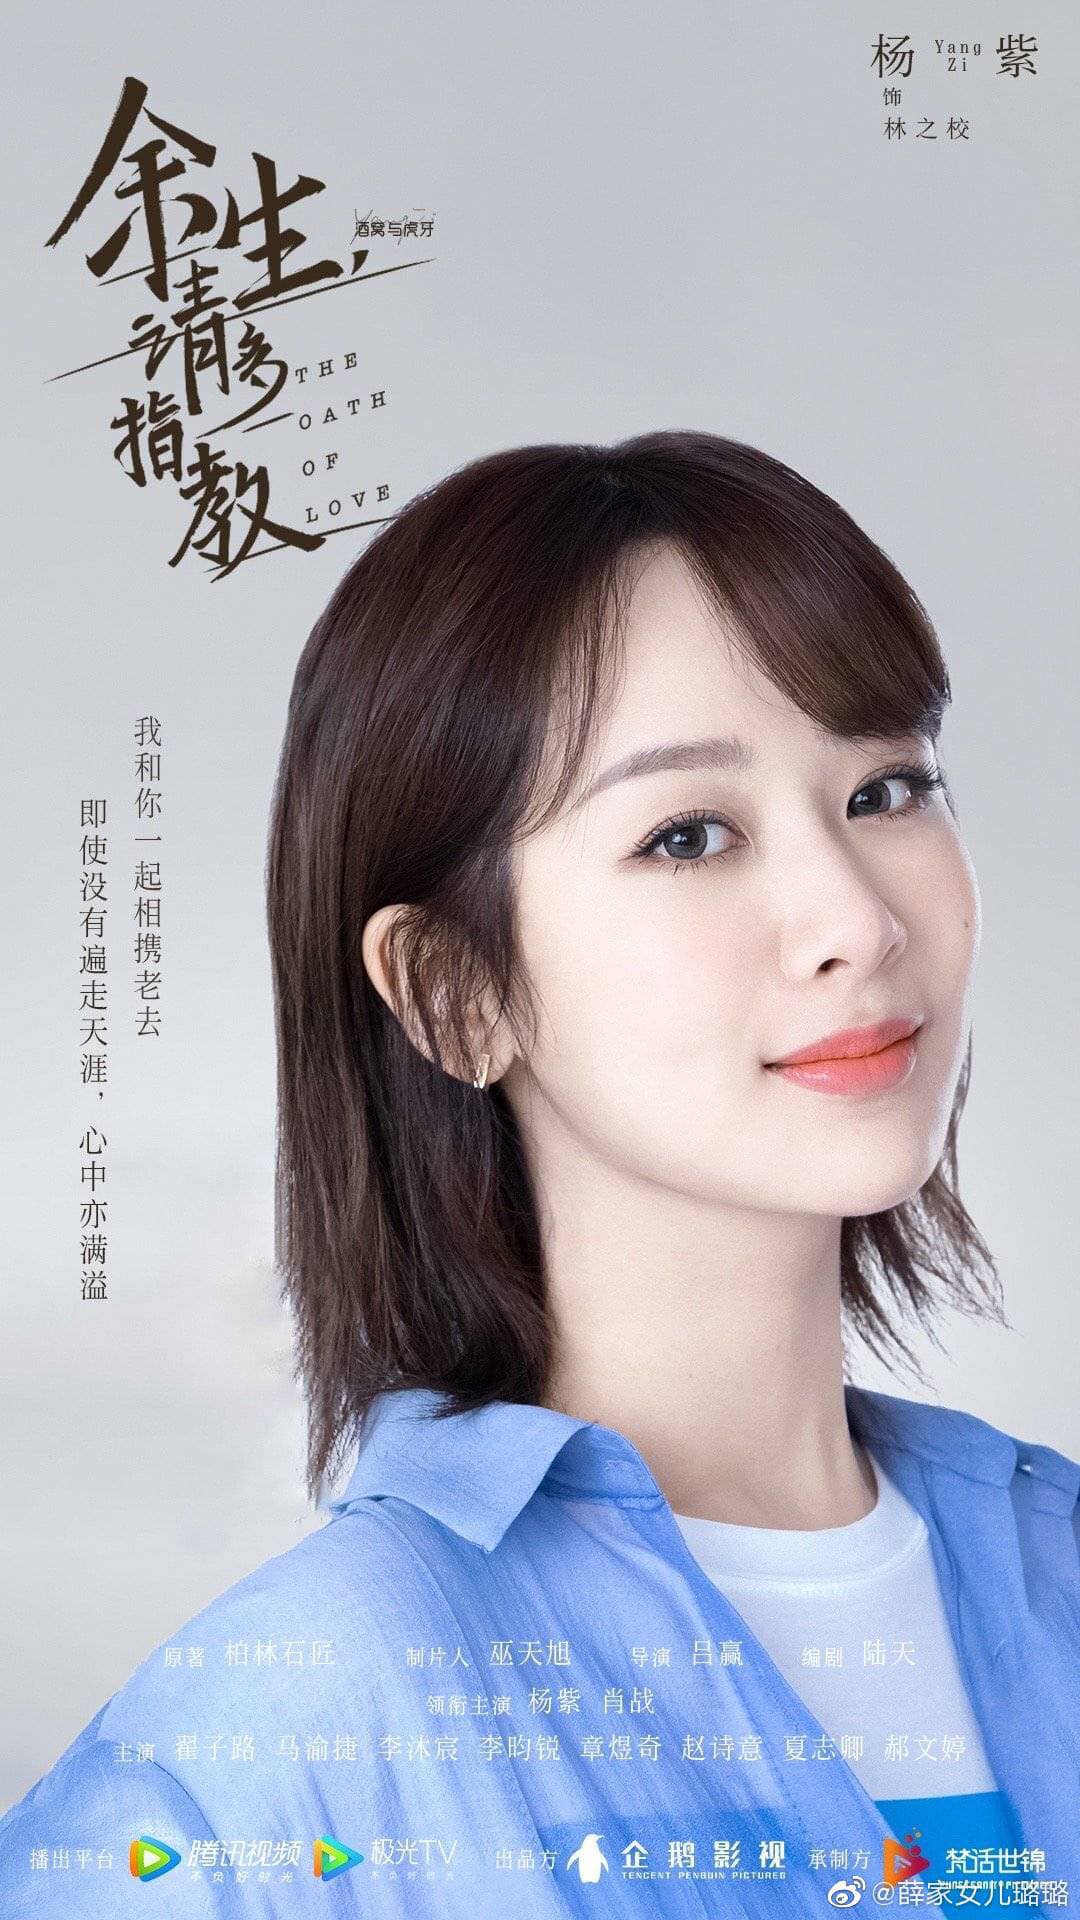 Profile chi tiết về dàn diễn viên phim DƯ SINH XIN CHỈ GIÁO NHIỀU HƠN của Dương Tử và Tiêu Chiến